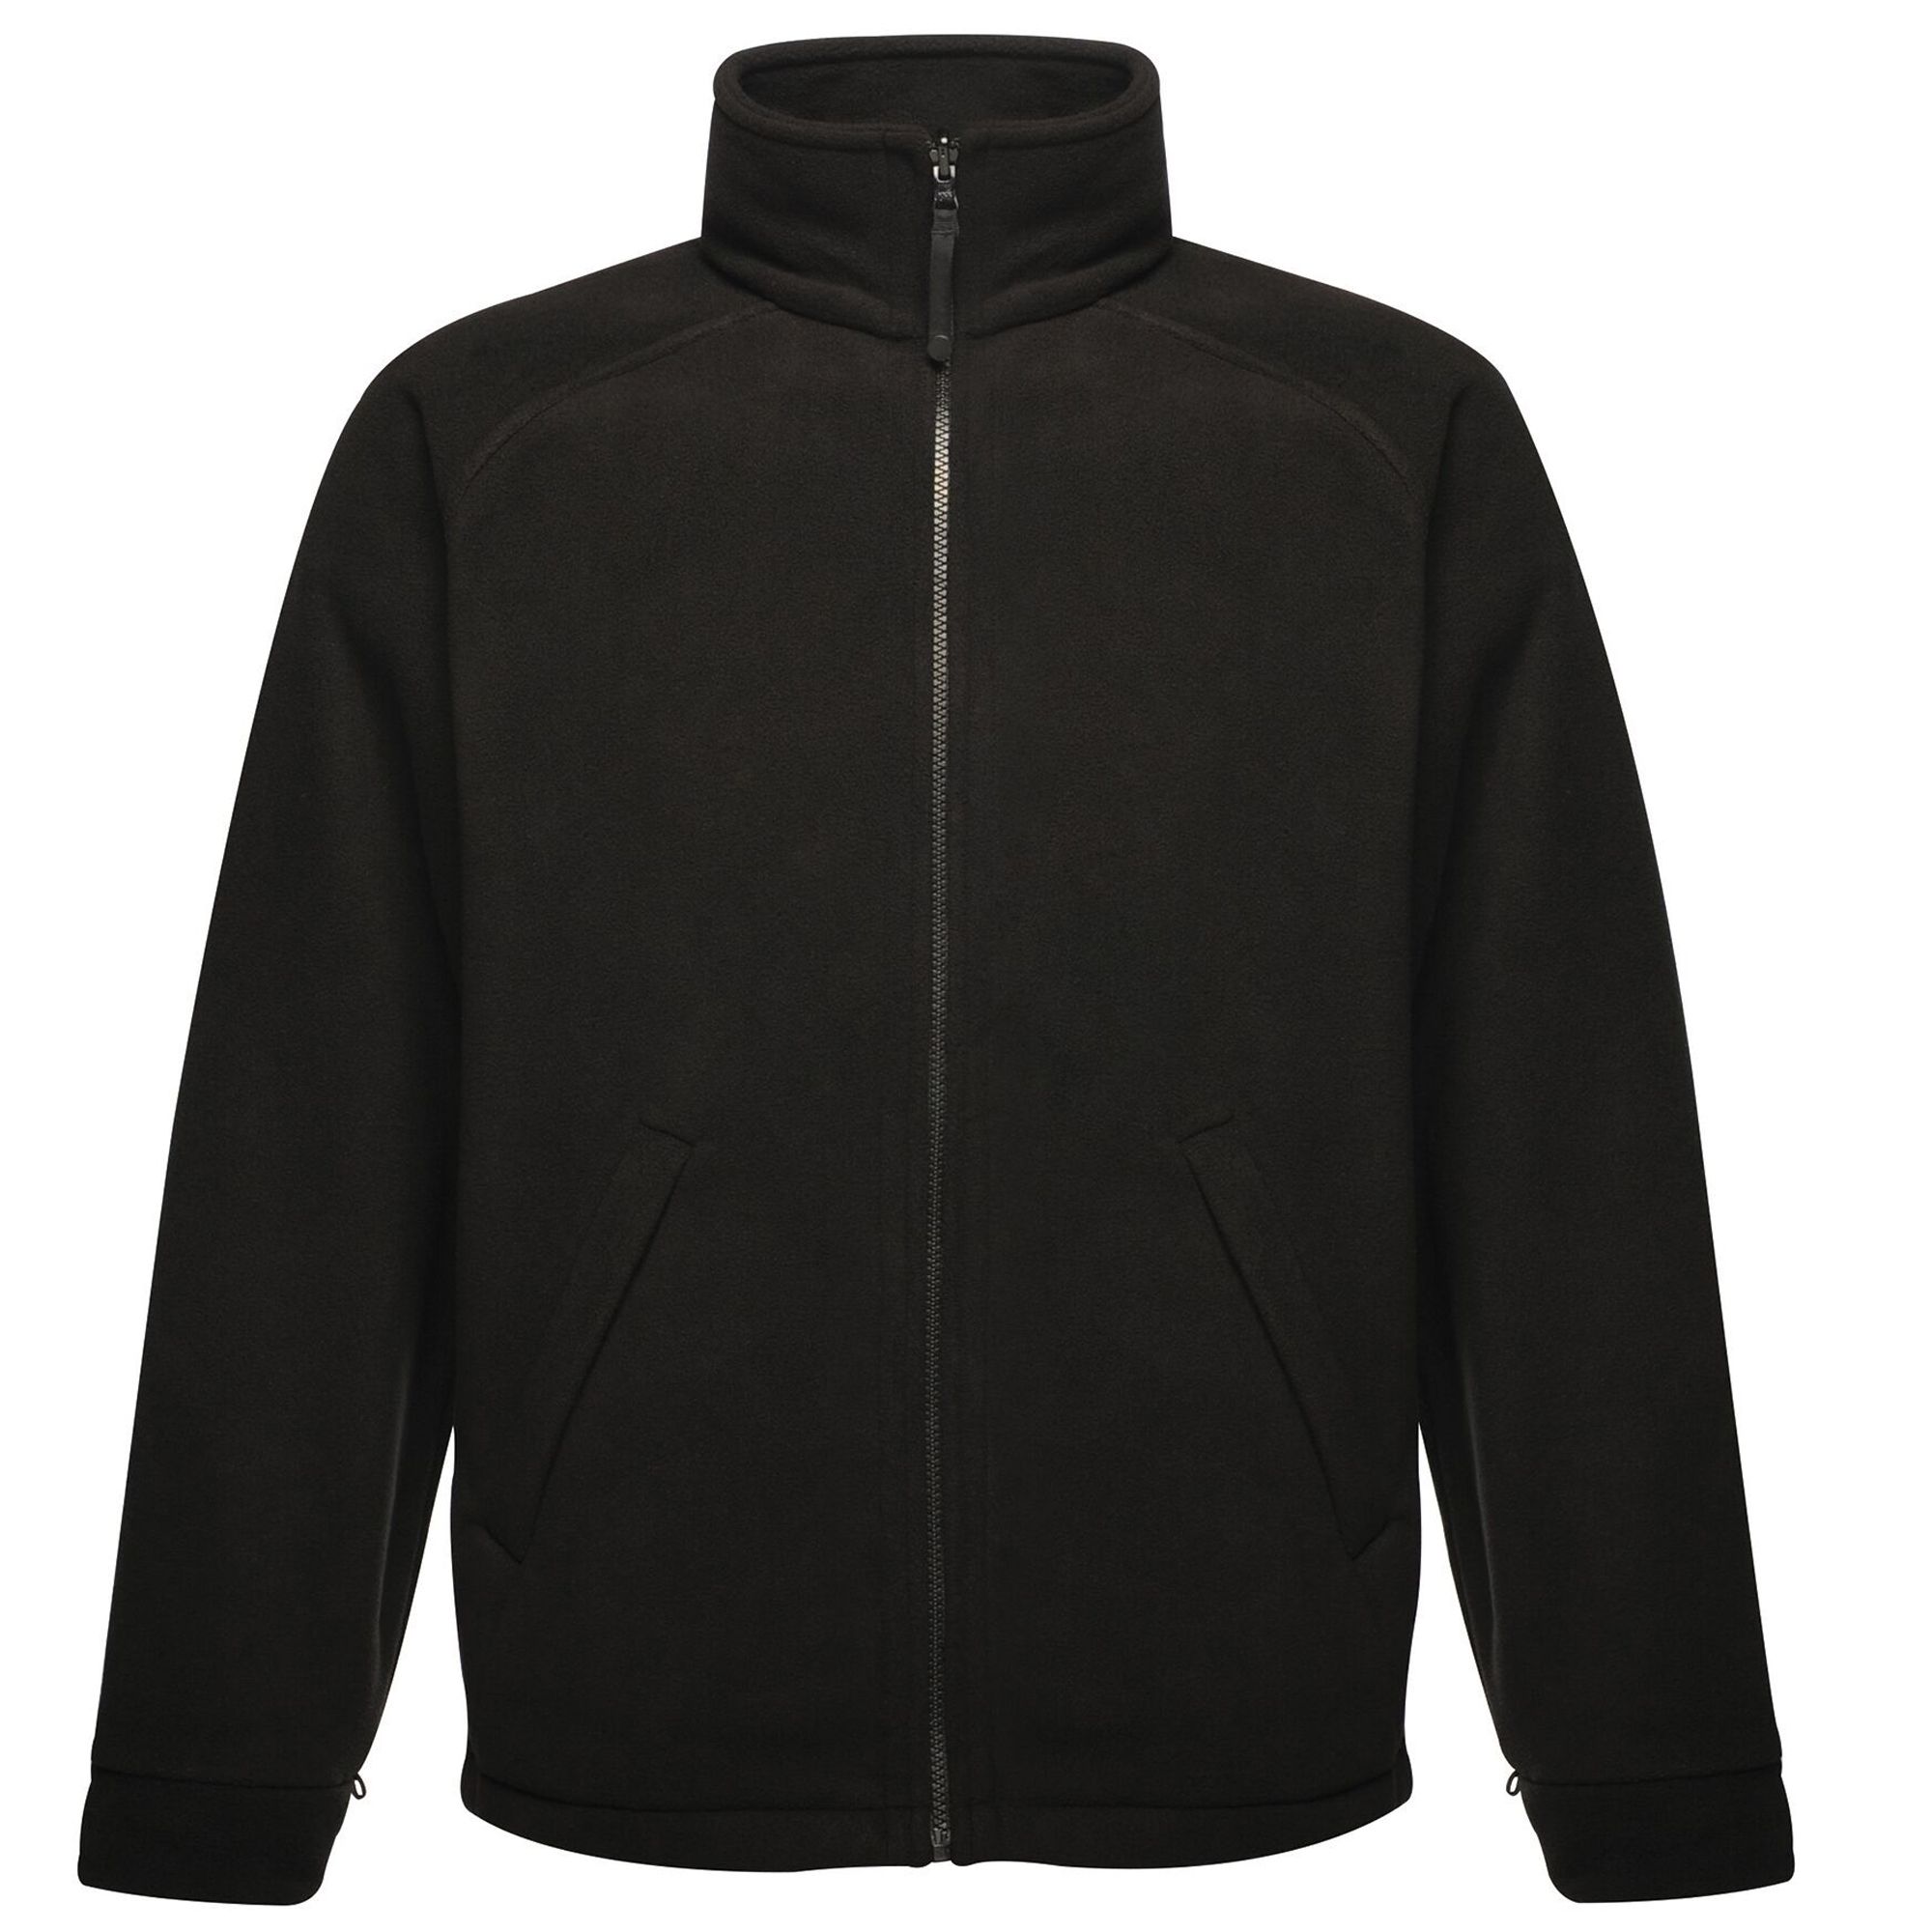 100% fleece. Unisex jacket. Adjustable shockcord hem. 2 zipped lower pockets. Symmetry Fleece - lighter weight/greater warmth. Weight: 380g/m² Symmetry fleece. Fabric: 380 series anti-pill Symmetry fleece. Regatta sizing (chest approx): XS (35-36in/89-91.5cm), S (37-38in/94-96.5cm), M (39-40in/99-101.5cm), L (41-42in/104-106.5cm), XL (43-44in/109-112cm), XXL (46-48in/117-122cm), XXXL (49-51in/124.5-129.5cm), XXXXL (52-54in/132-137cm), XXXXXL (55-57in/140-145cm).